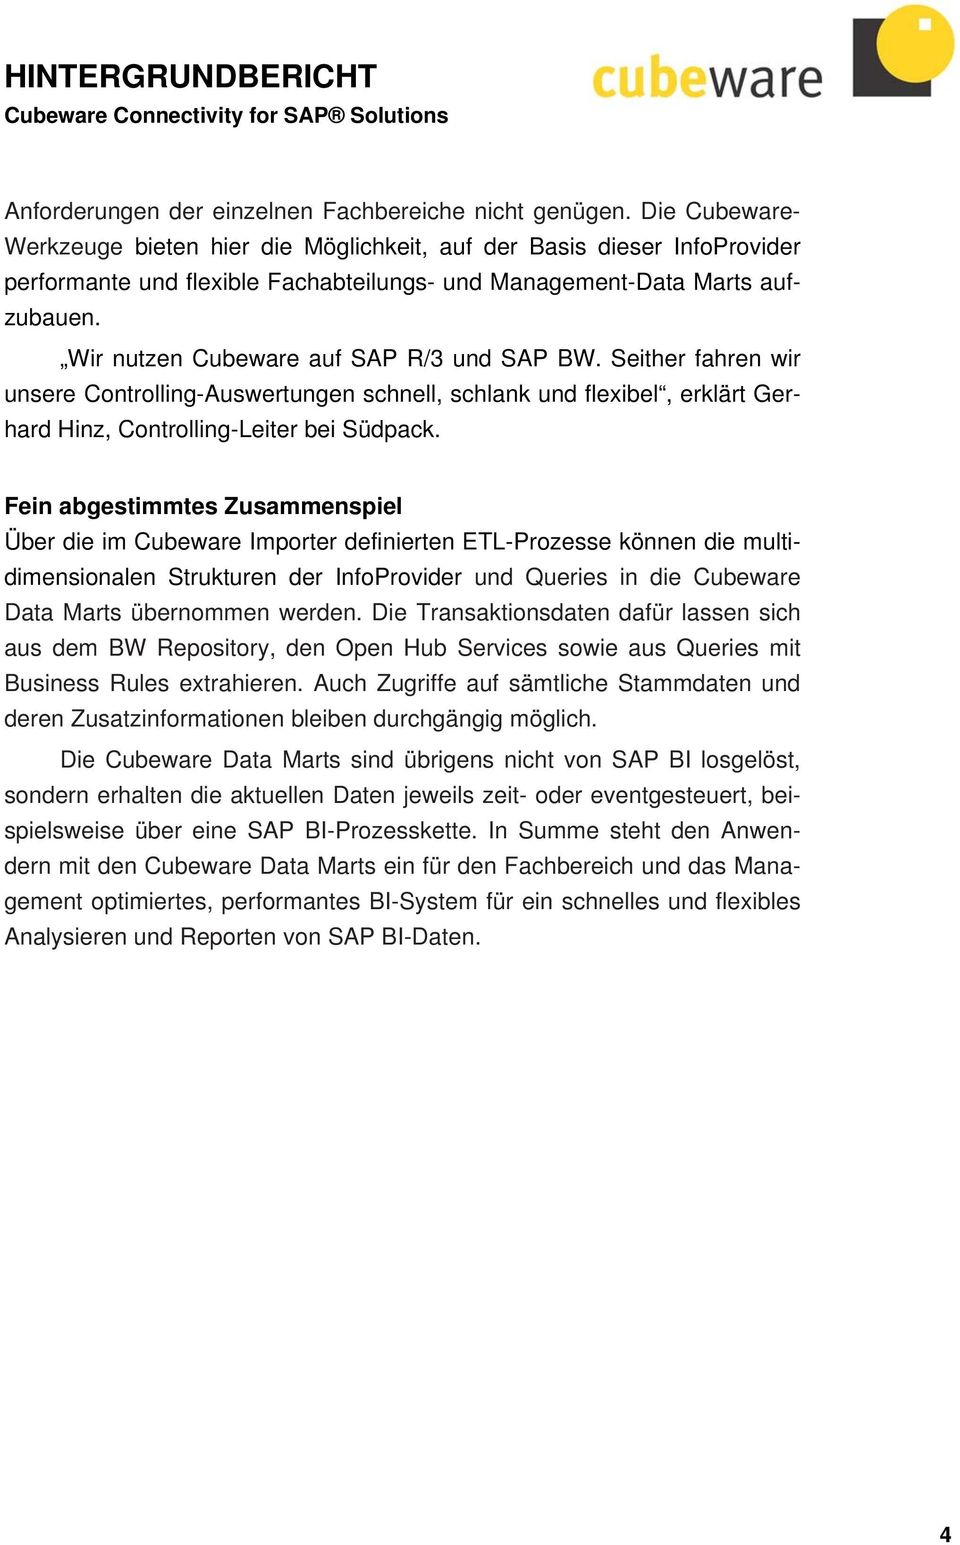 Wir nutzen Cubeware auf SAP R/3 und SAP BW. Seither fahren wir unsere Controlling-Auswertungen schnell, schlank und flexibel, erklärt Gerhard Hinz, Controlling-Leiter bei Südpack.